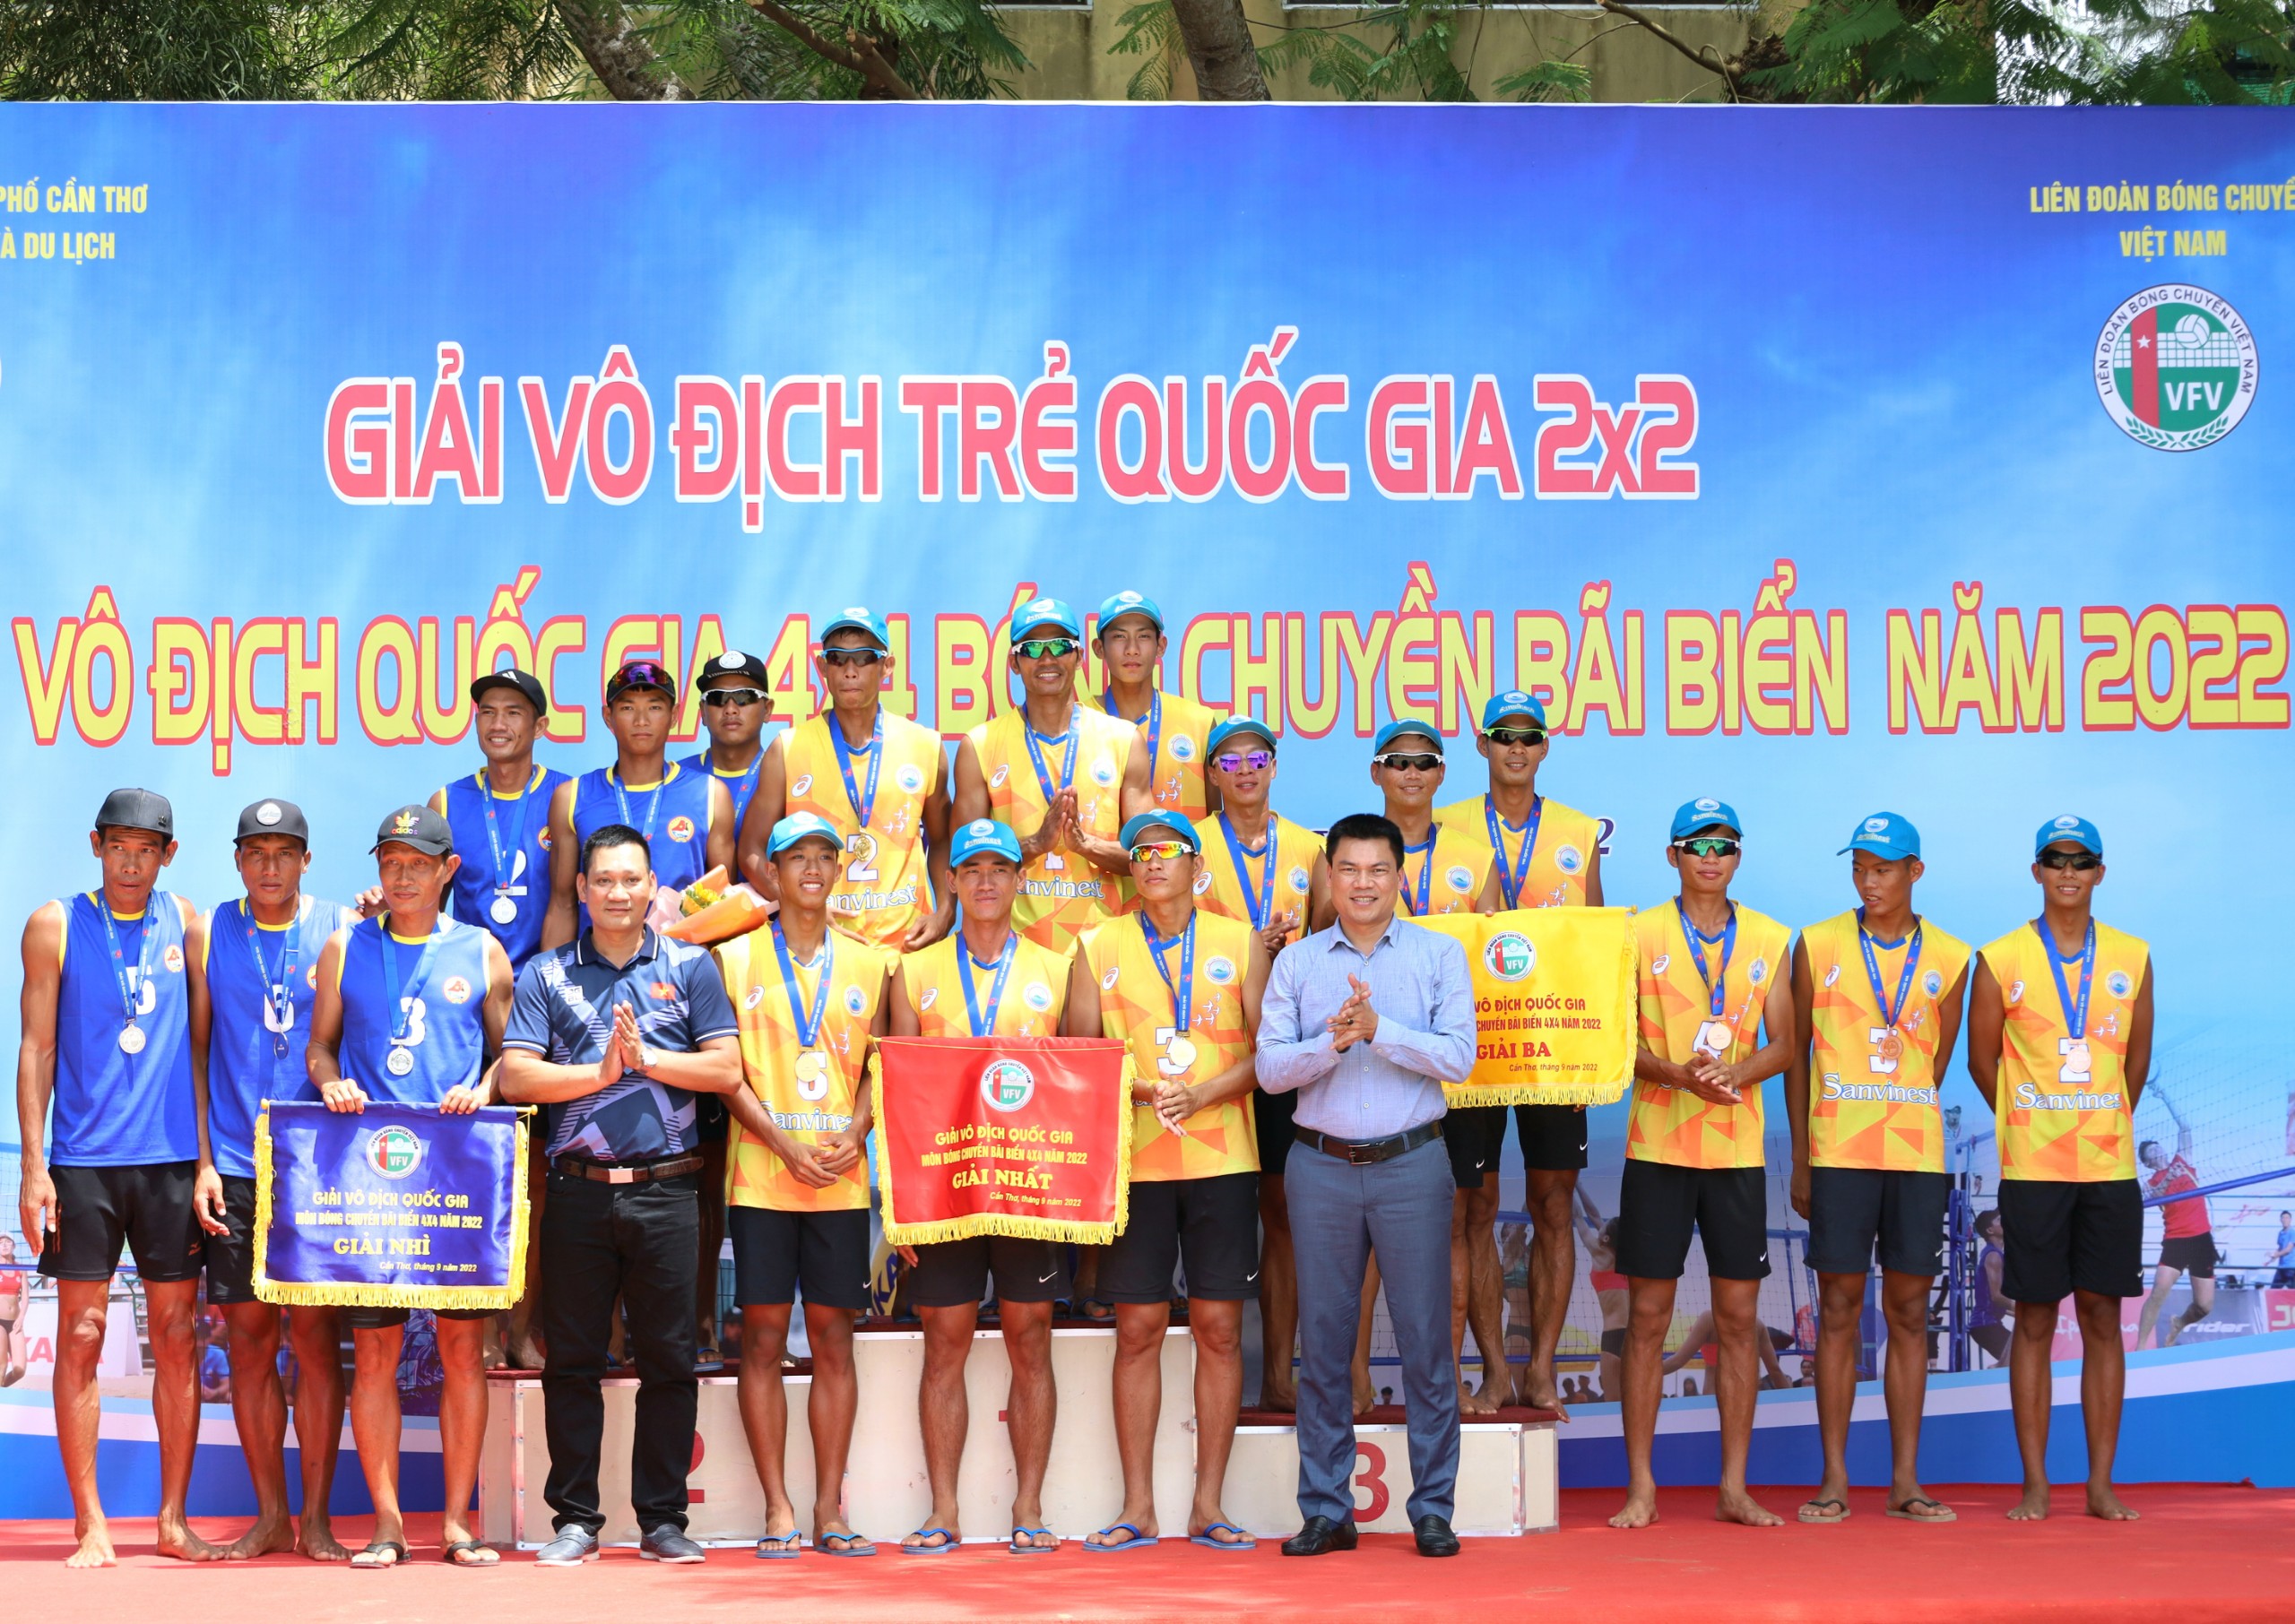 Ông Đào Xuân Chung - Trưởng Bộ môn Bóng chuyền Tổng cục TDTT và ông Nguyễn Thái Bình - Trưởng ban Bóng chuyền bãi biển Liên đoàn Bóng chuyền Việt Nam trao huy chương và cờ cho các đội nam đạt thành tích cao tại giải.